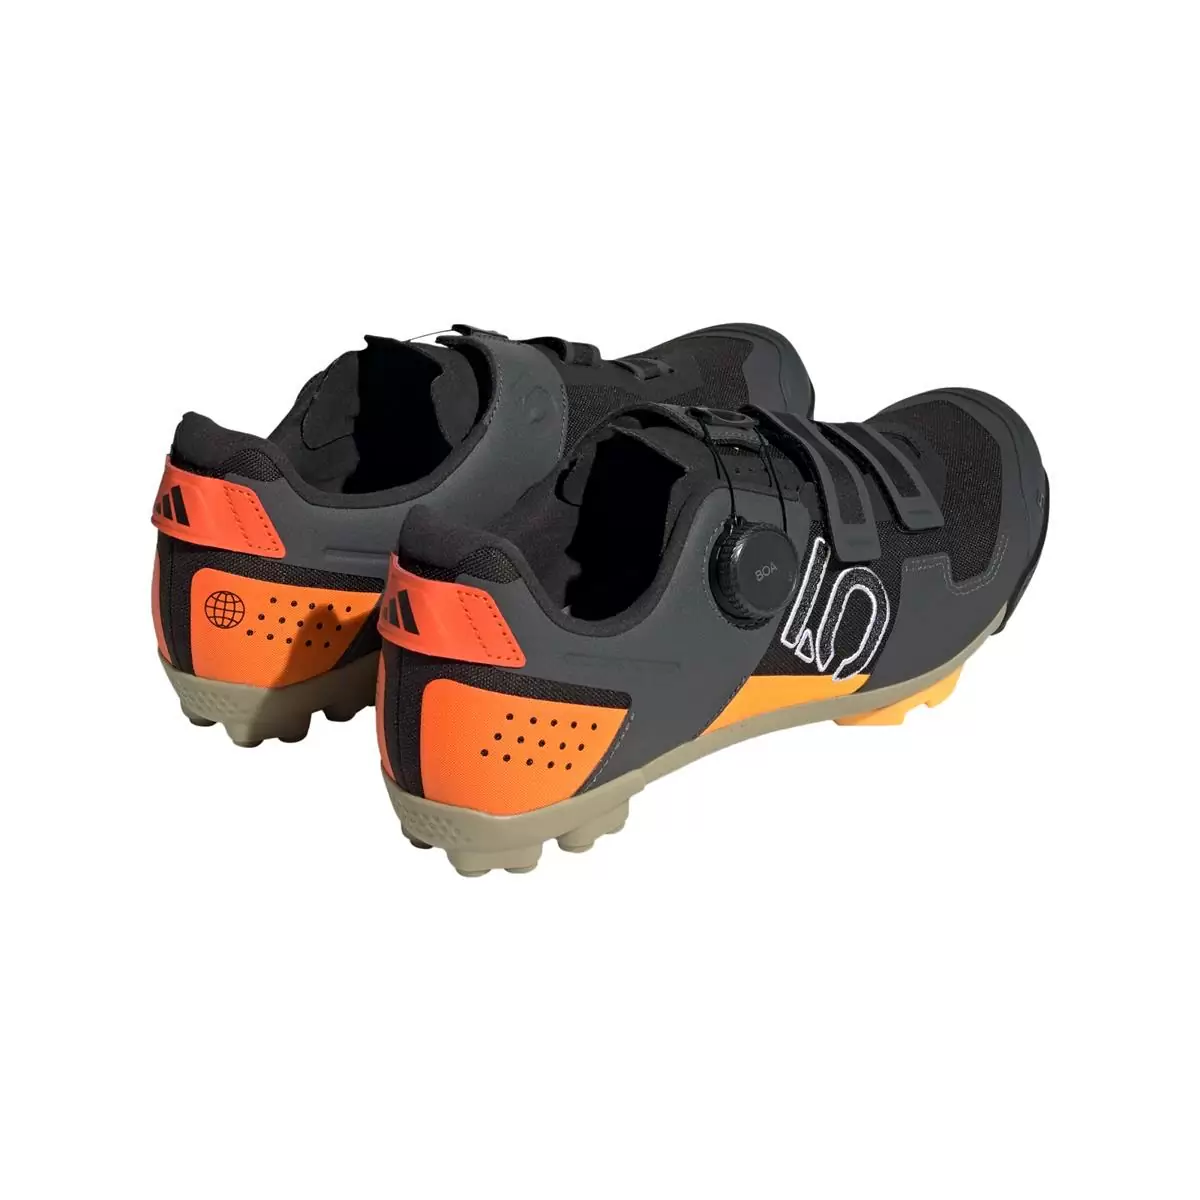 Clip 5.10 Kestrel Boa MTB-Schuhe Schwarz/Orange Größe 41.5 #4